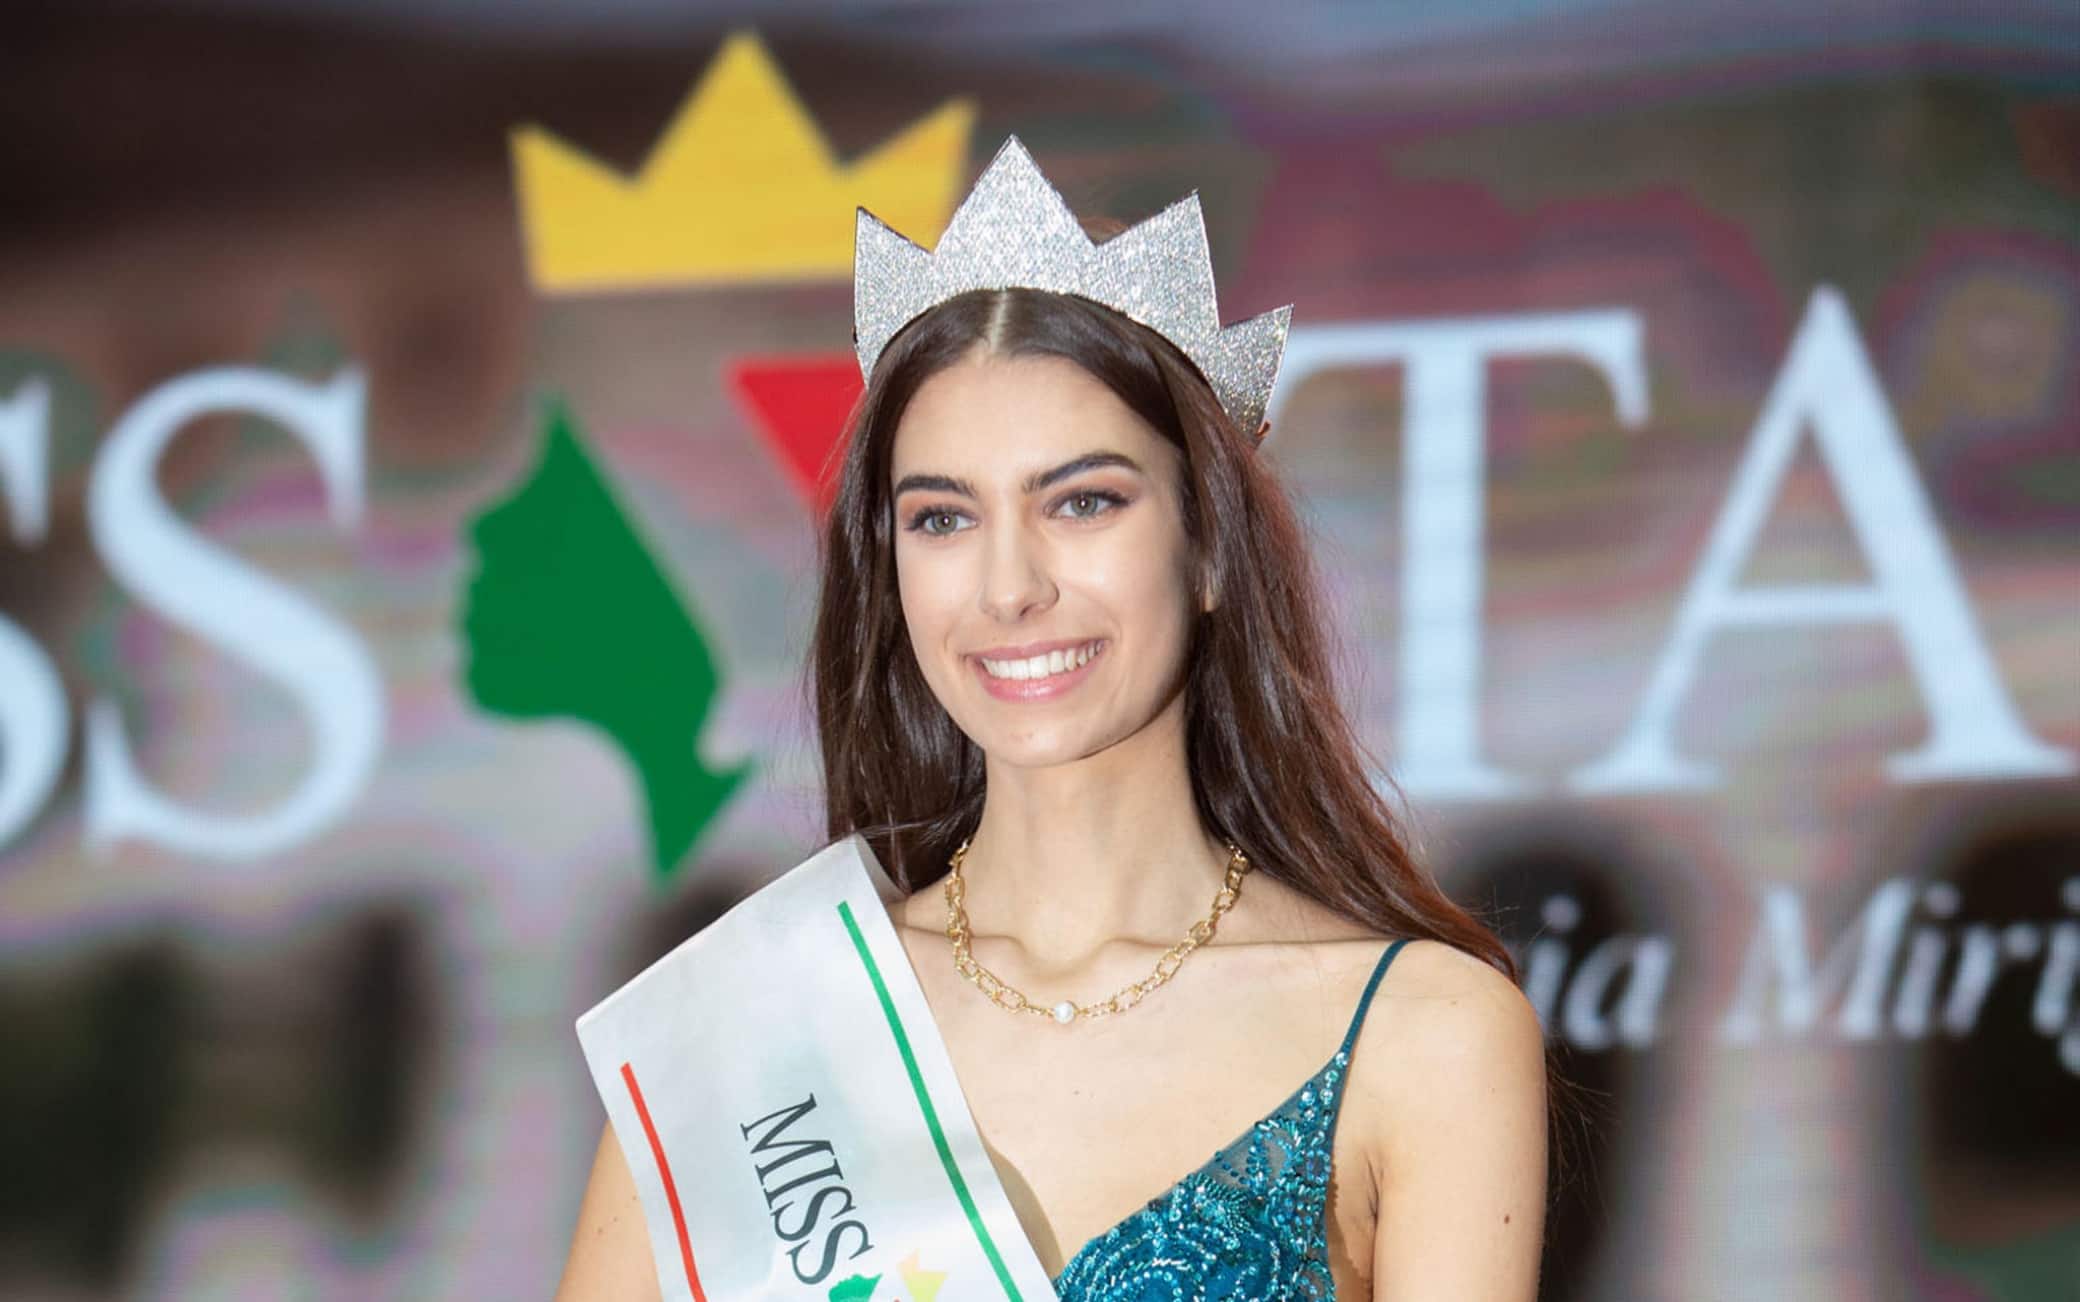 Fasce Archivi - Pagina 3 di 17 - Miss Mondo Italia